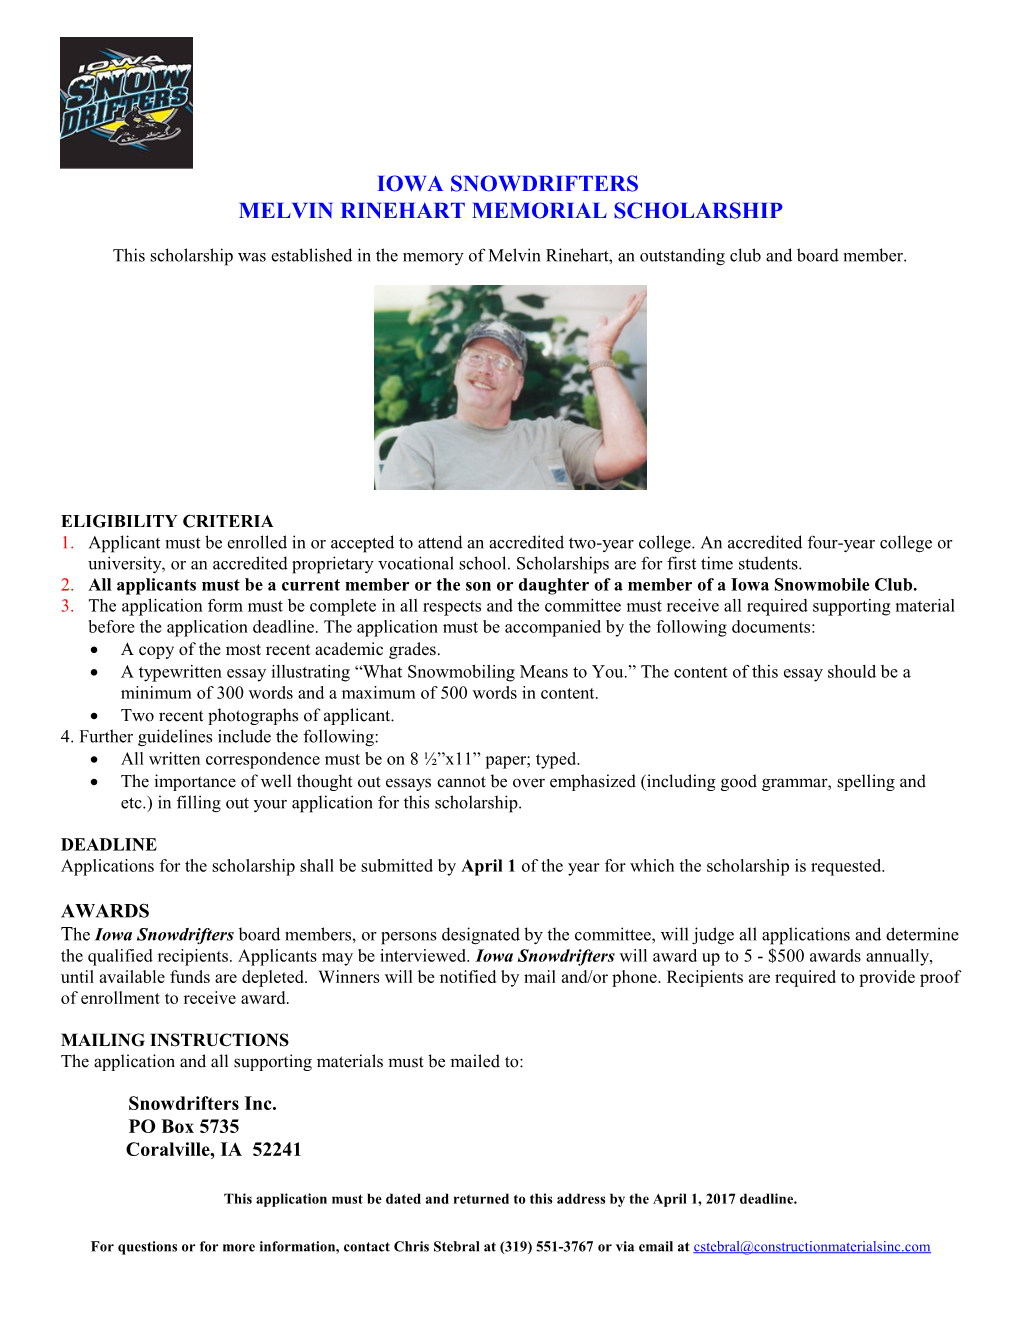 Melvin Rinehart Memorial Scholarship